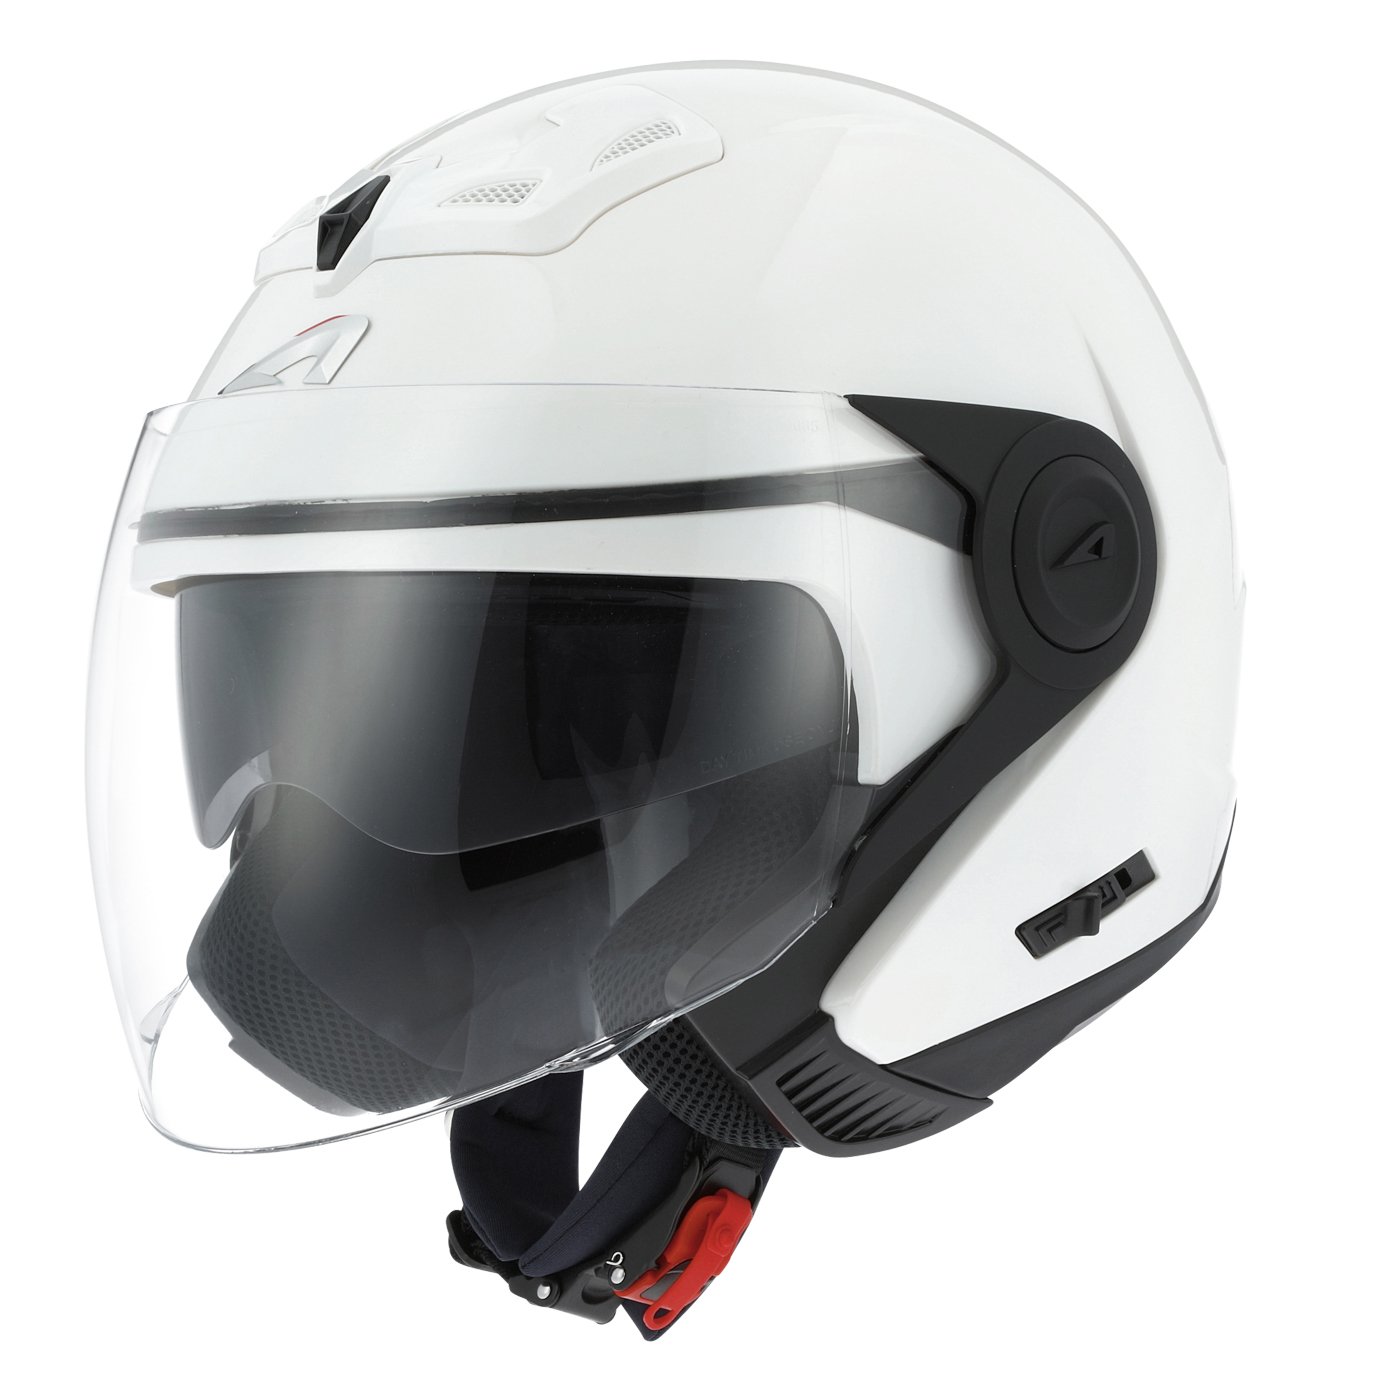 Astone Helmets - Casque jet DJ8 monocolor - Casque jet look rétro - Casque idéal en zone urbaine - Coque en polycarbonate -Gloss white M von Astone Helmets